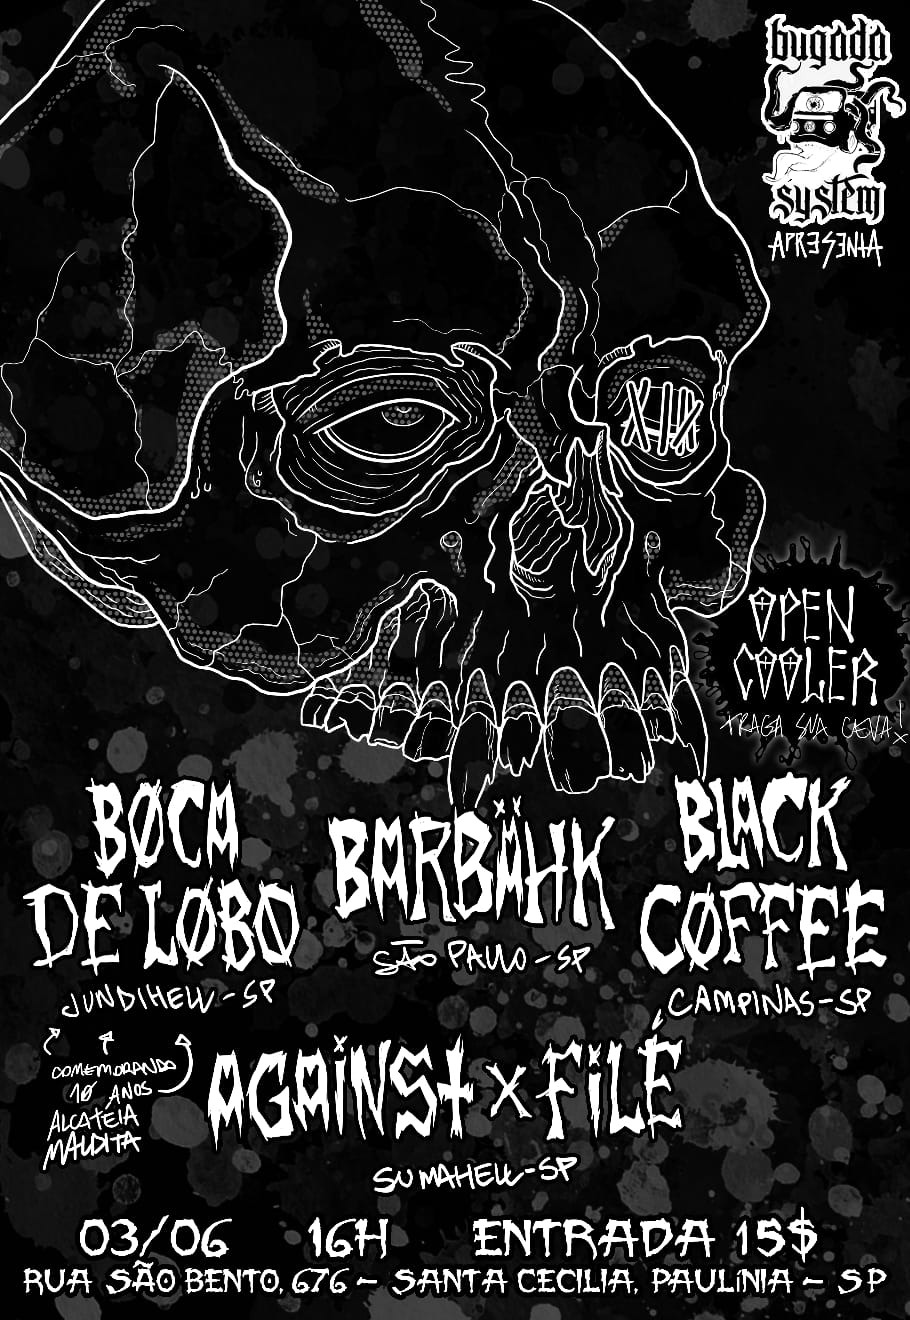 BOCA DE LOBO, BARBÄHK, BLACK COFFEE E AGAINST X FILÉ EM PAULÍNIA-SP